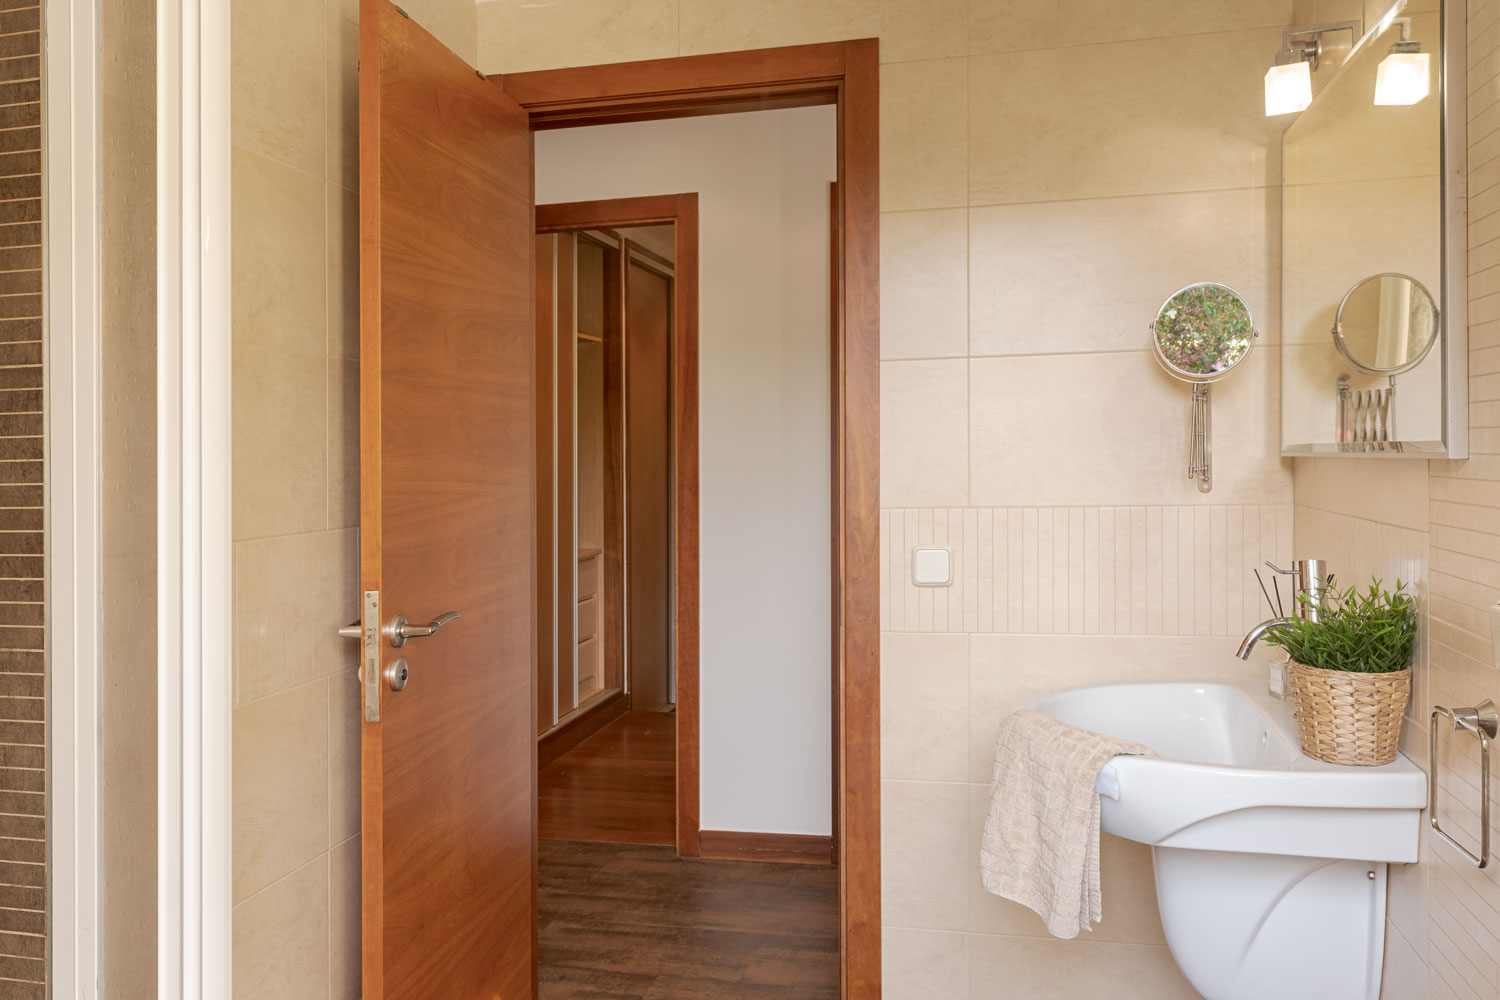 Vista del baño con azulejos beige, espejo moderno, lavabo blanco, y una planta verde, al lado de una puerta abierta que muestra un pasillo de madera